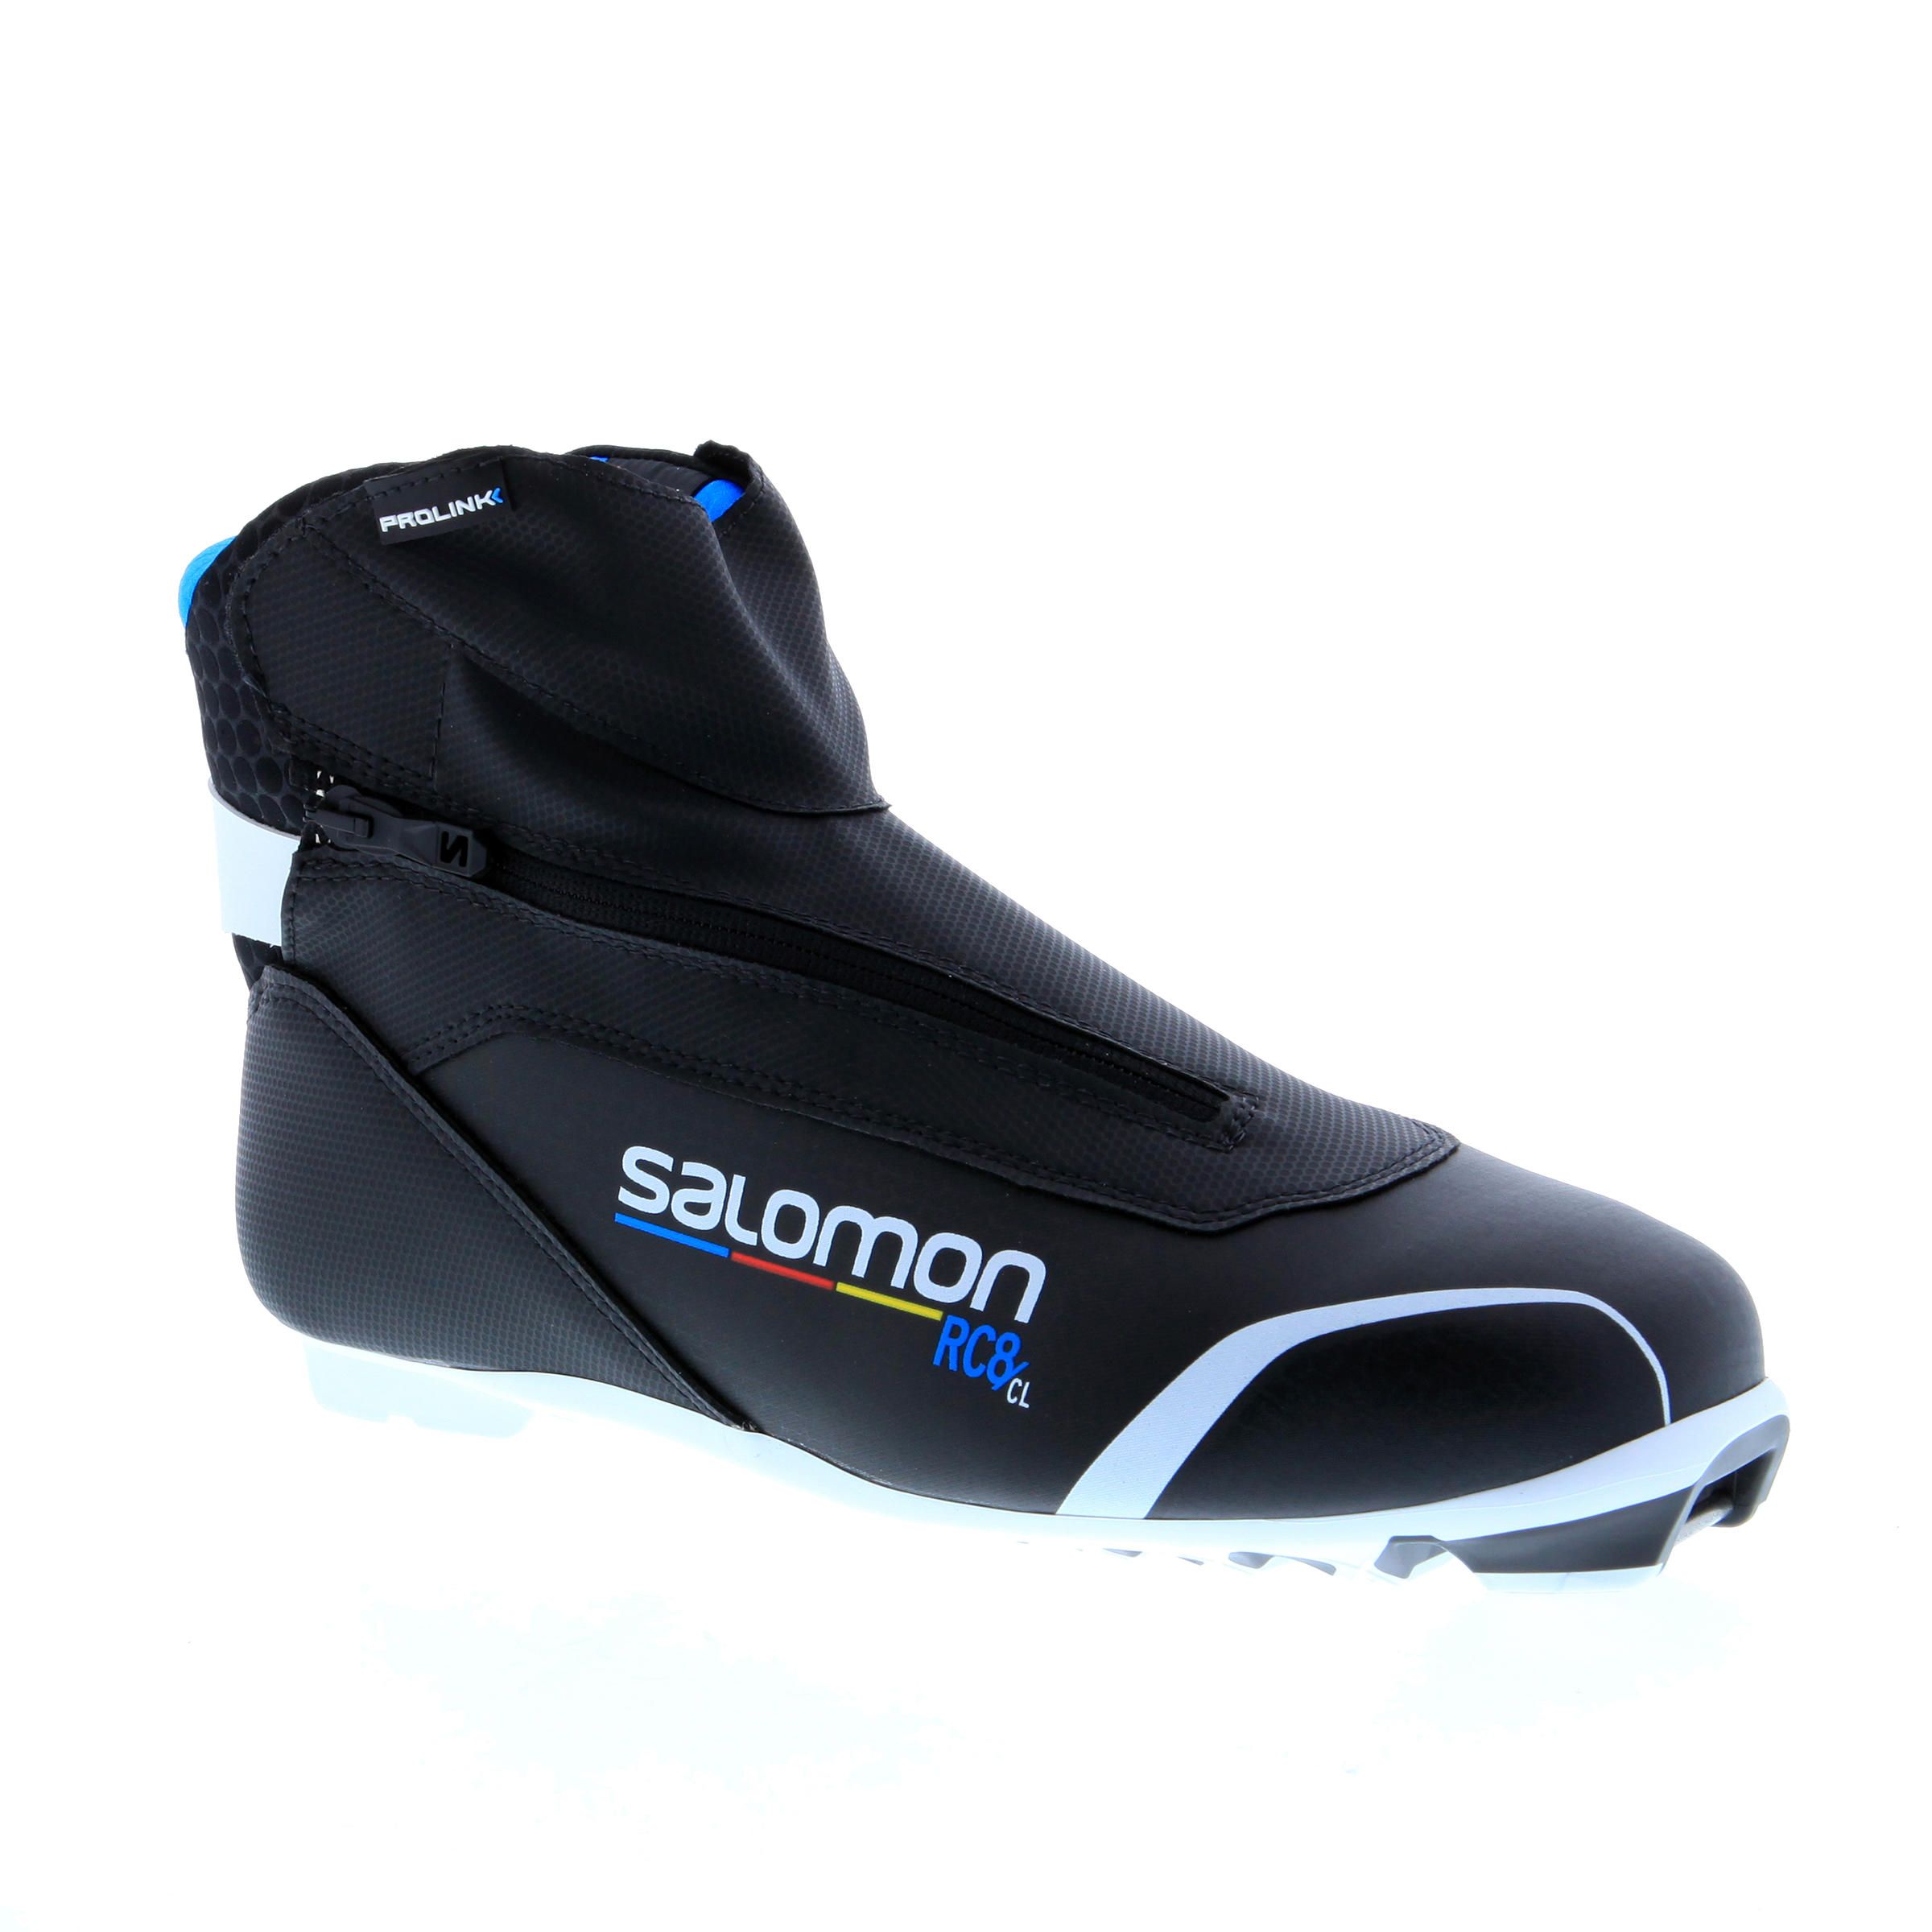 SALOMON Chaussure De Ski Fond Classique Adulte Xc S Boots Rc8 Cl -